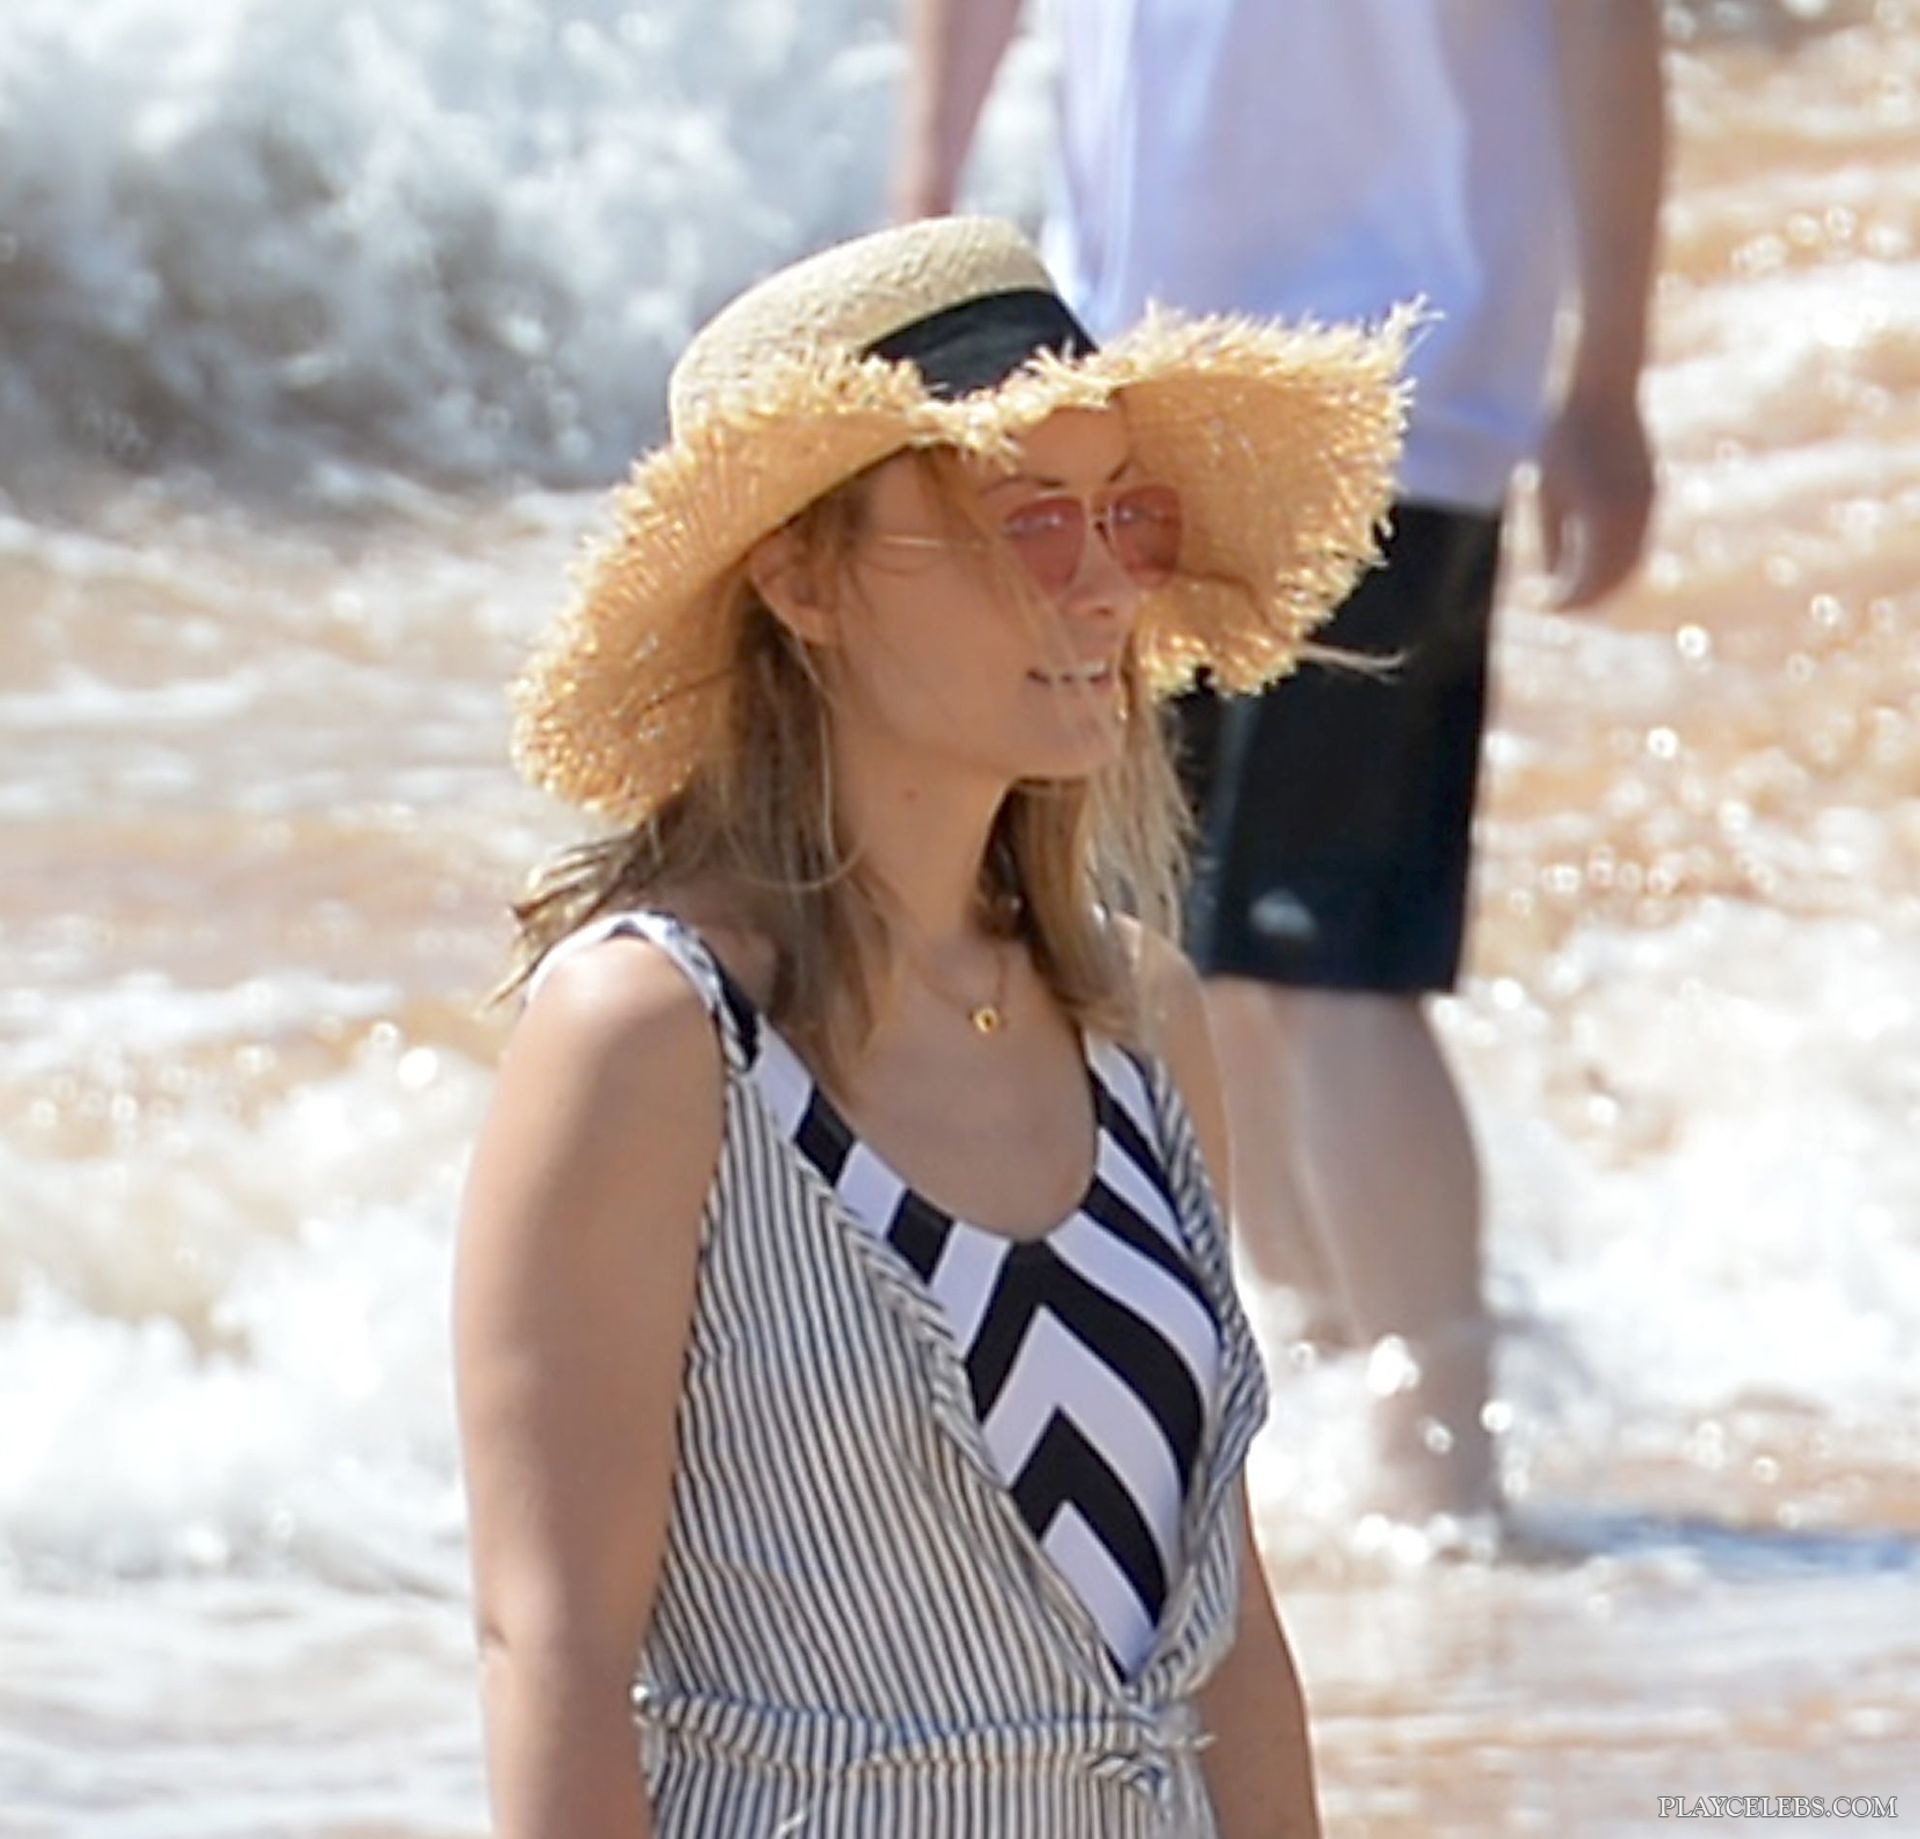 Olivia Wilde Sunbathing In Sexy Swimsuit On A Beach 